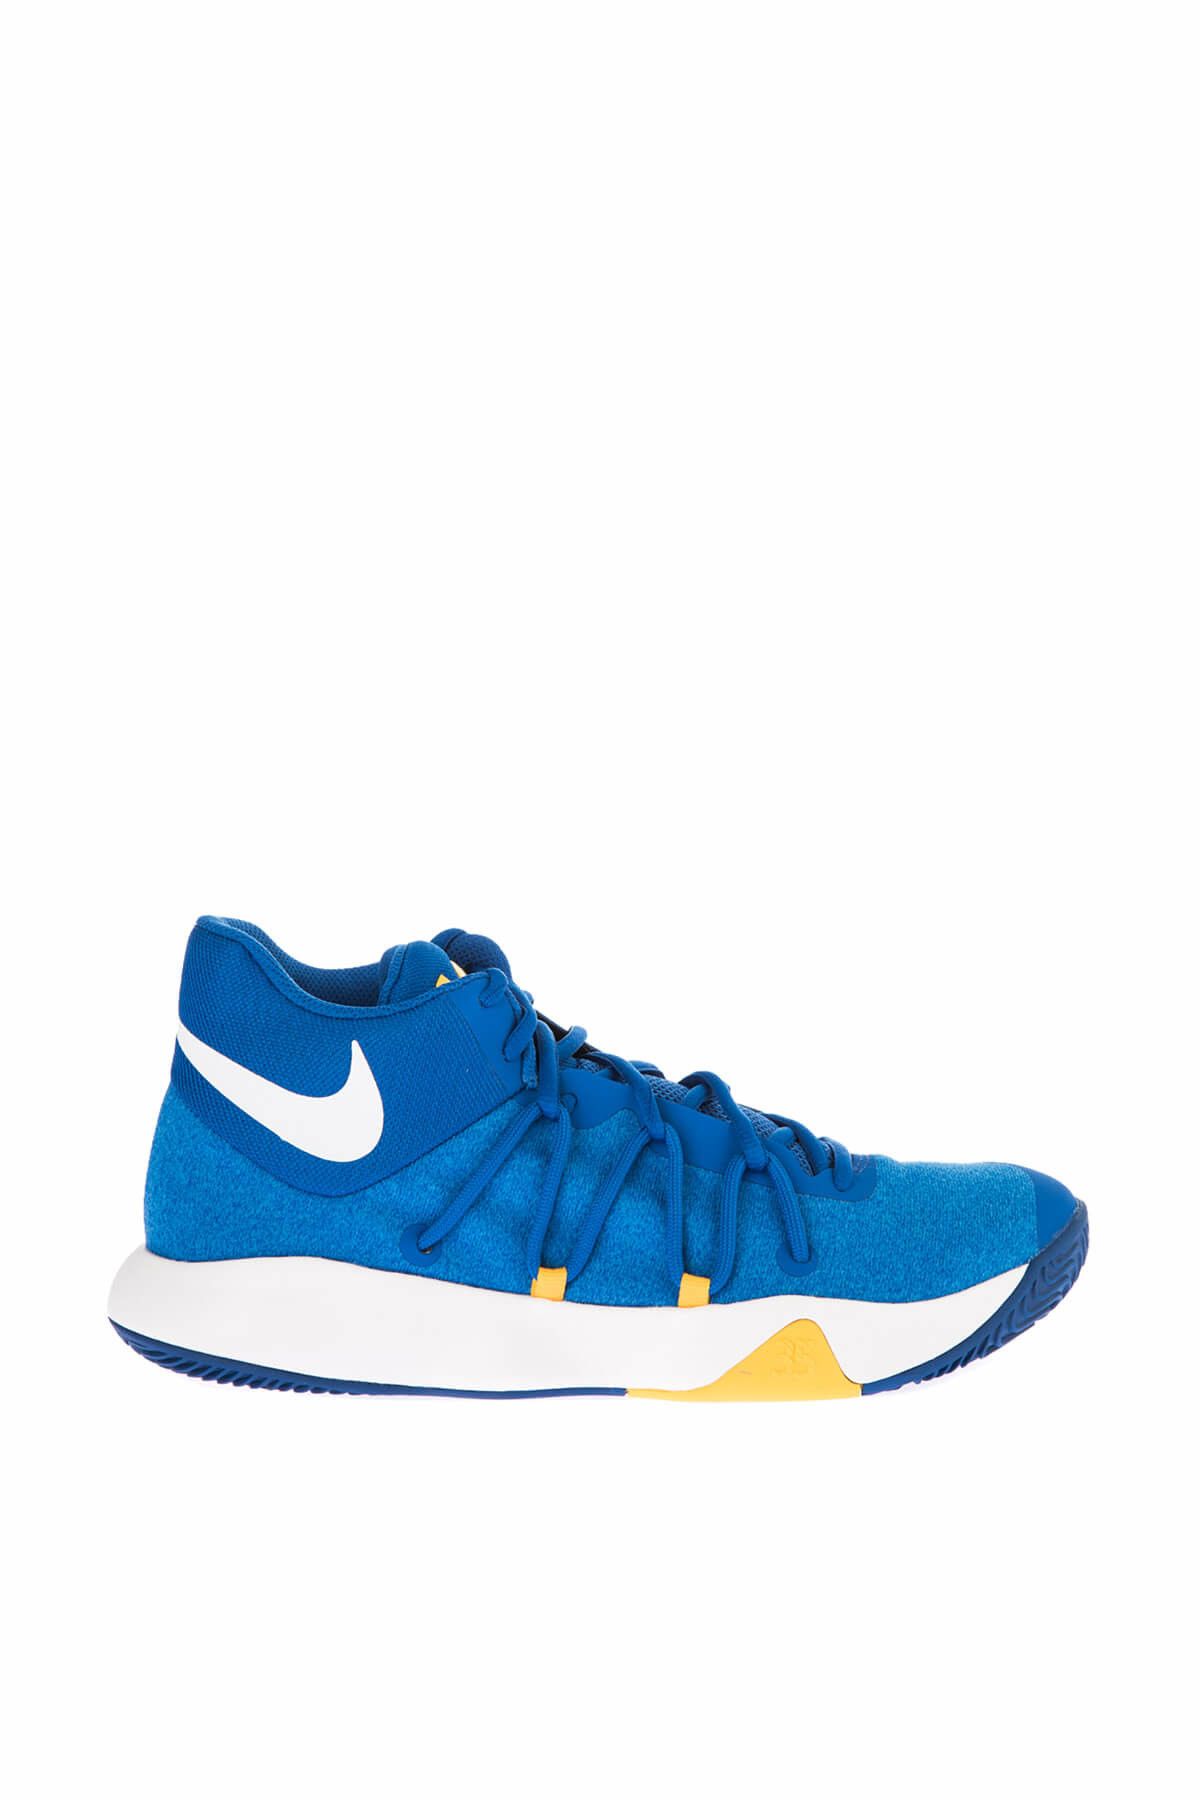 Nike Erkek Basketbol Ayakkabısı - Kd Trey 5 V Shoe - 897638-400